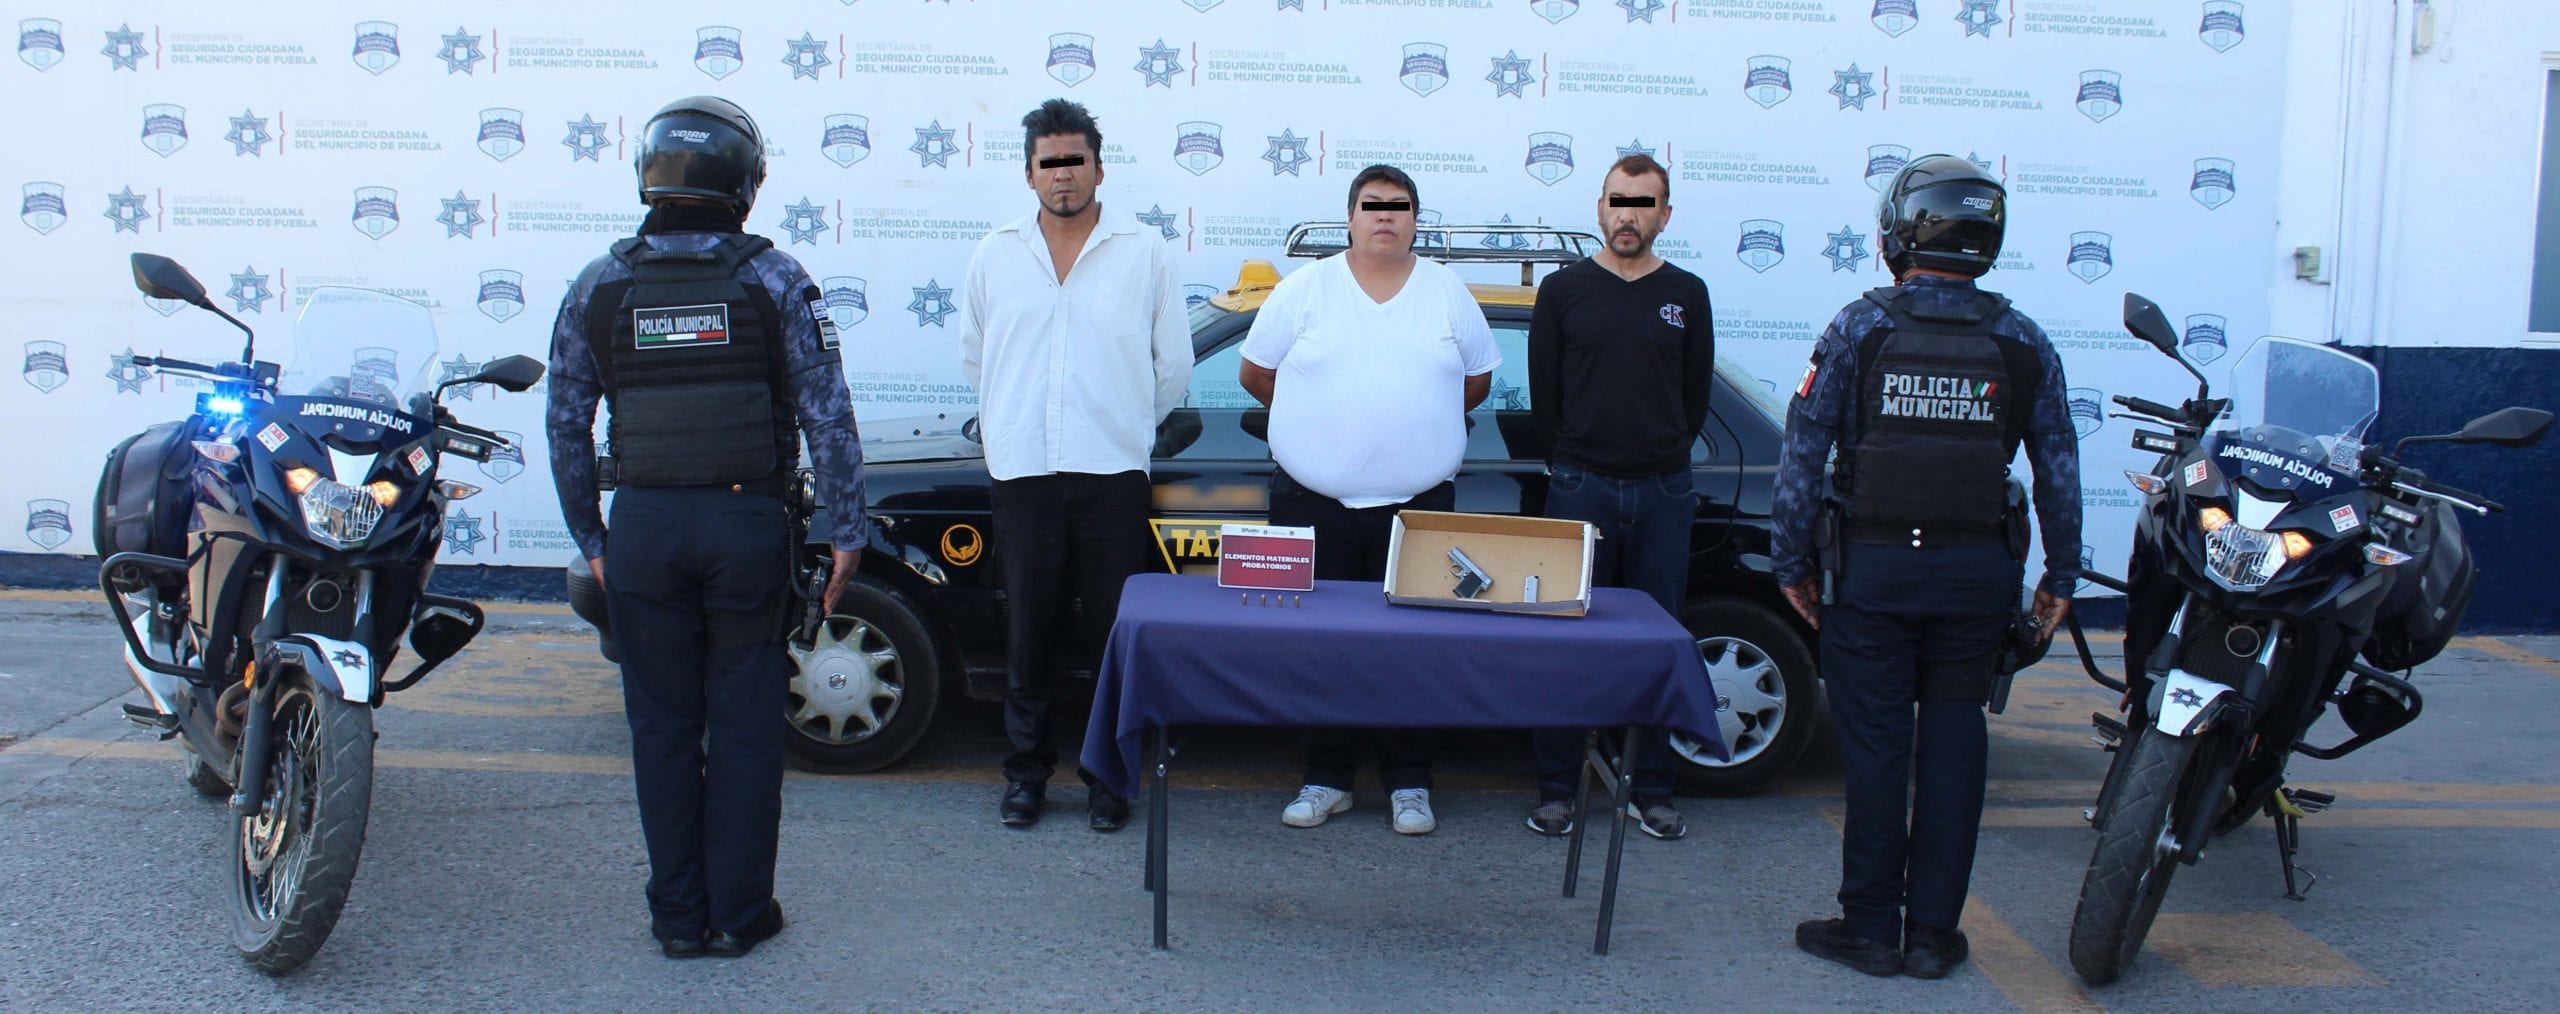 Desarticuló Policía Municipal de Puebla a banda delictiva presuntamente dedicada al robo a negocio.